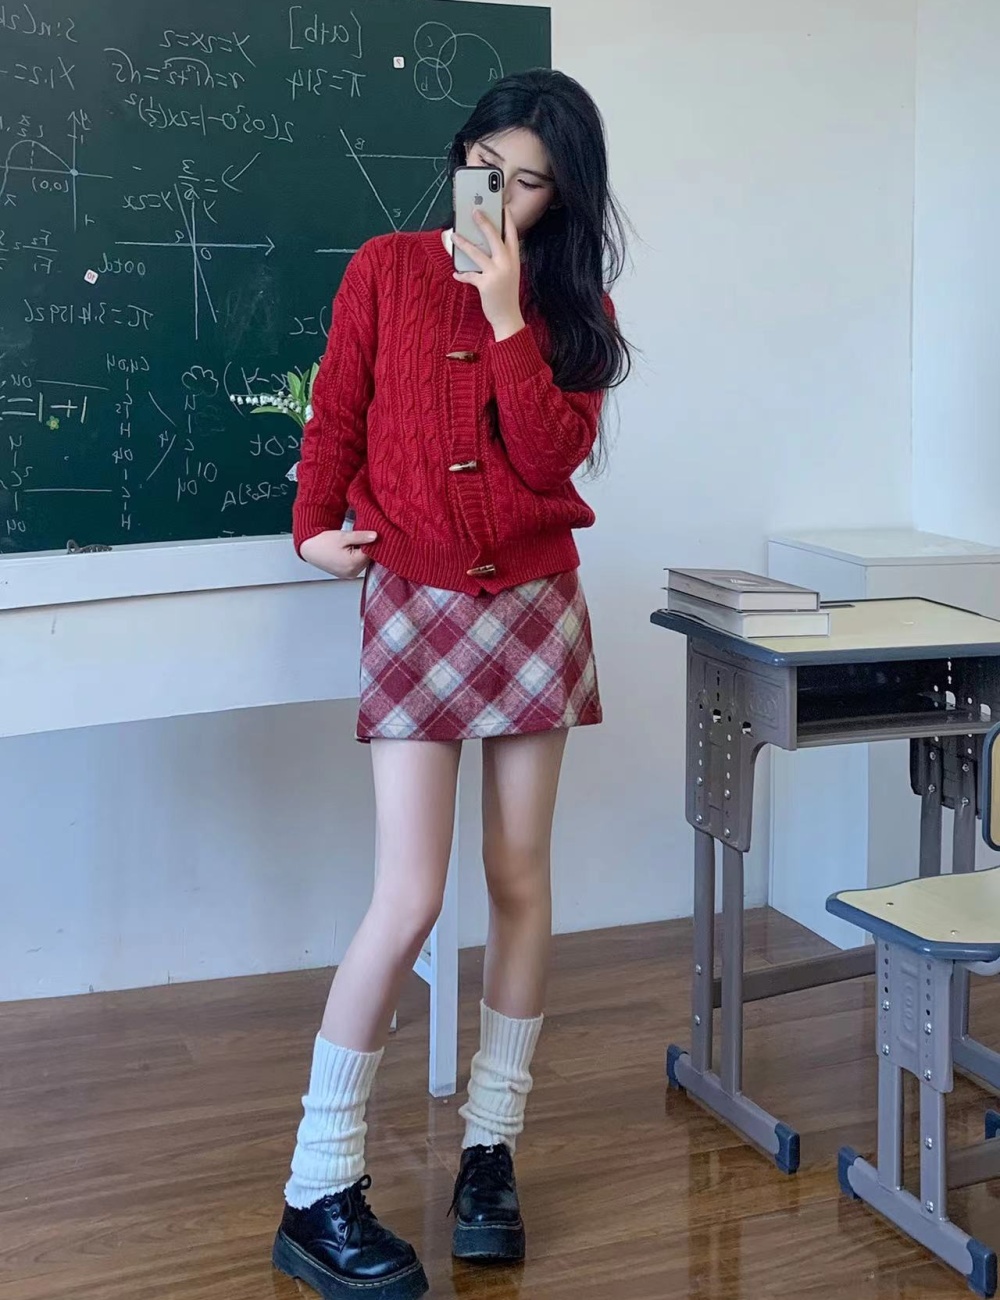 Horn buckle niche sweater red skirt a set for women